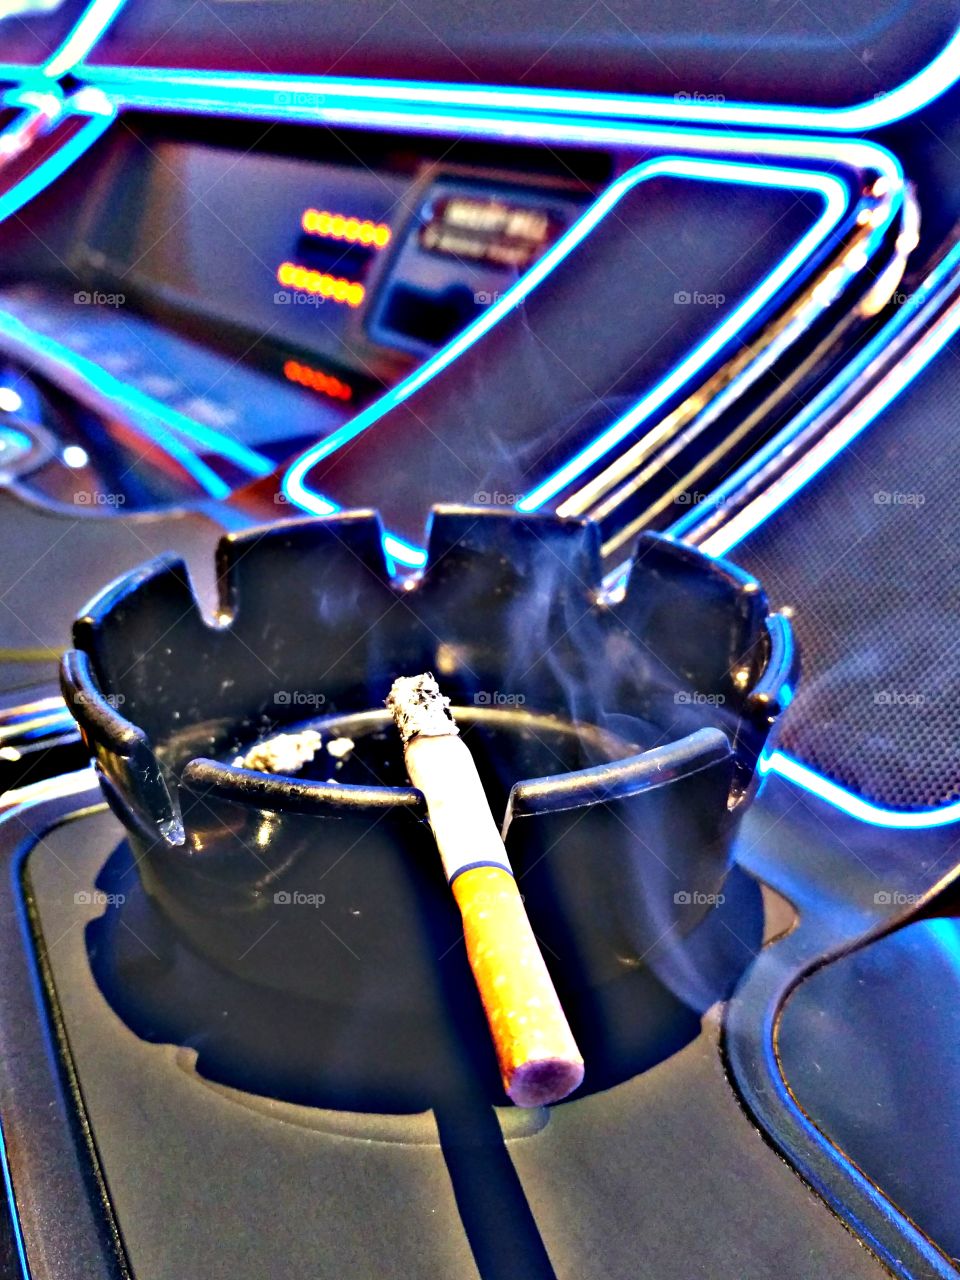 smoking in the casino